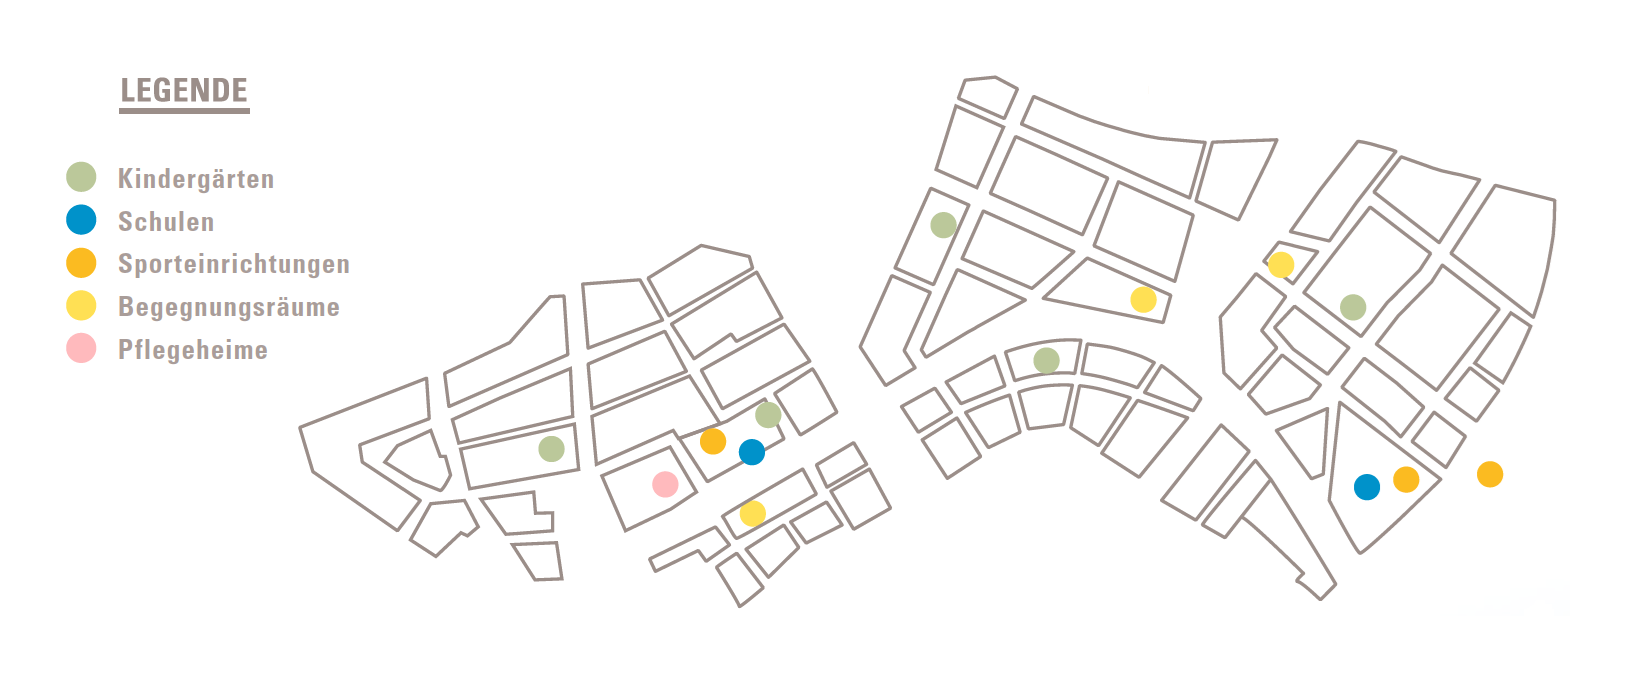 Grafik mit Übersicht der sozialen Einrichtungen im neuen Stadtteil Hafner